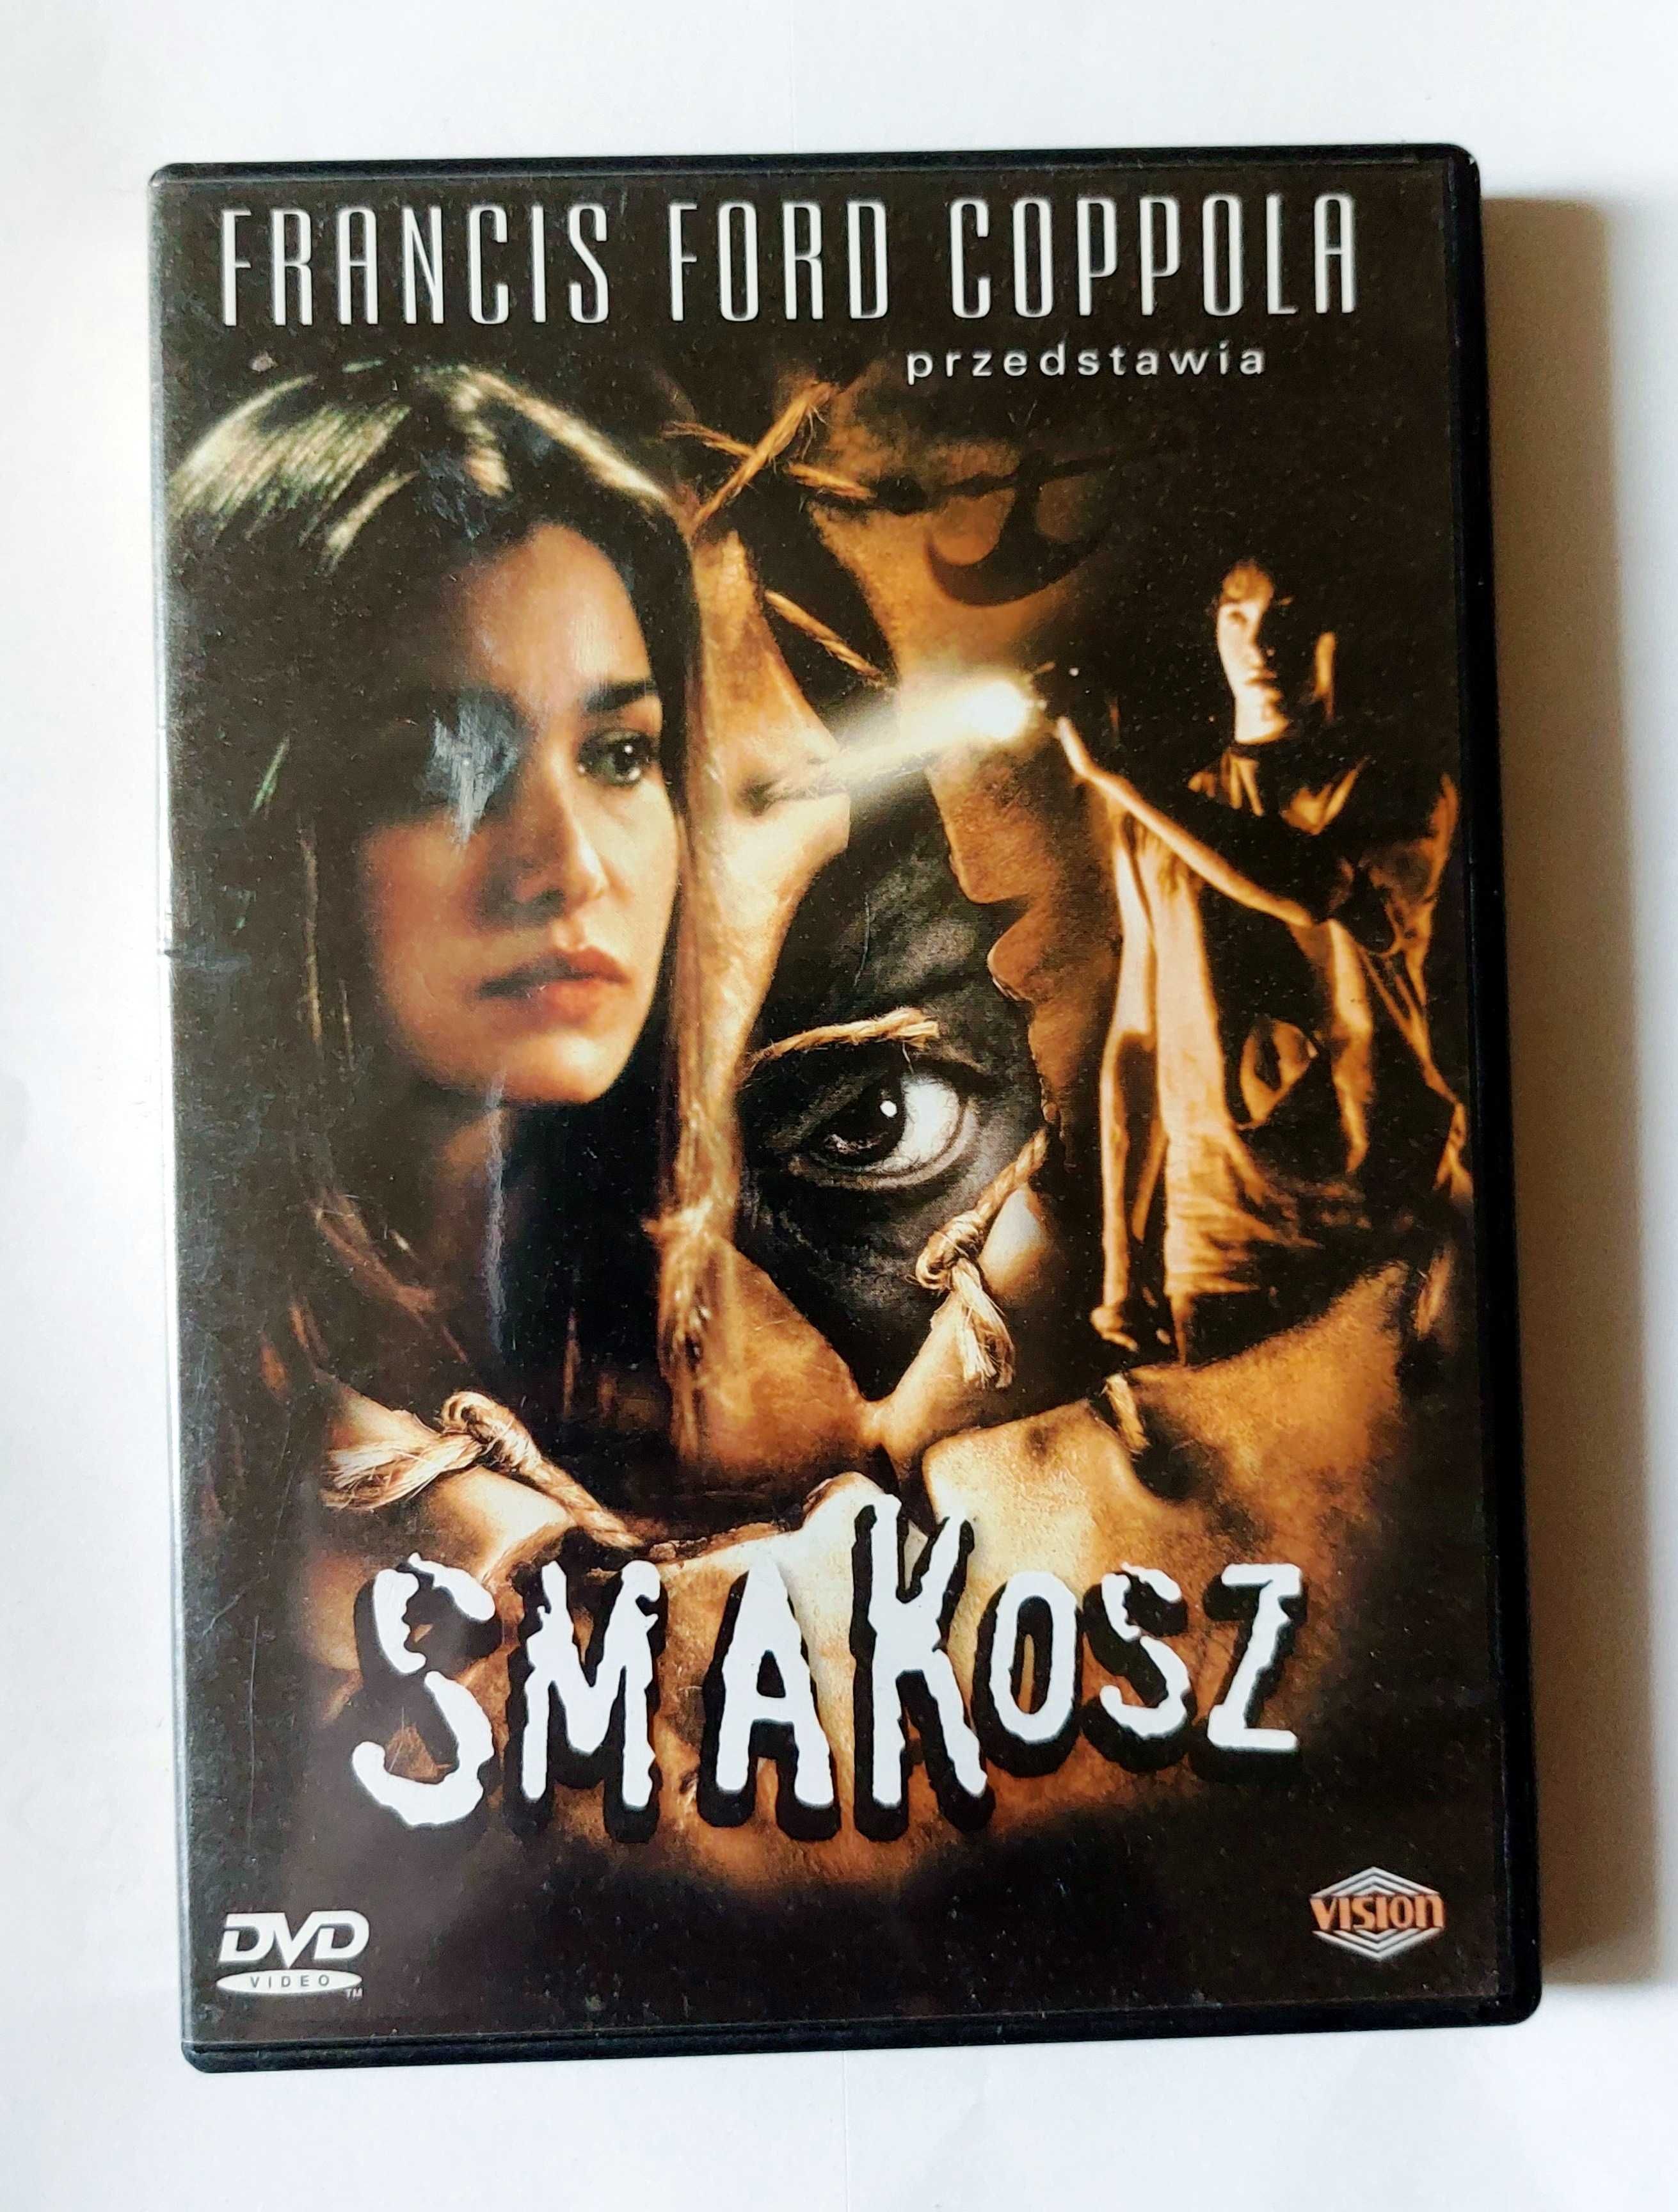 SMAKOSZ | pierwsza część | film grozy na DVD